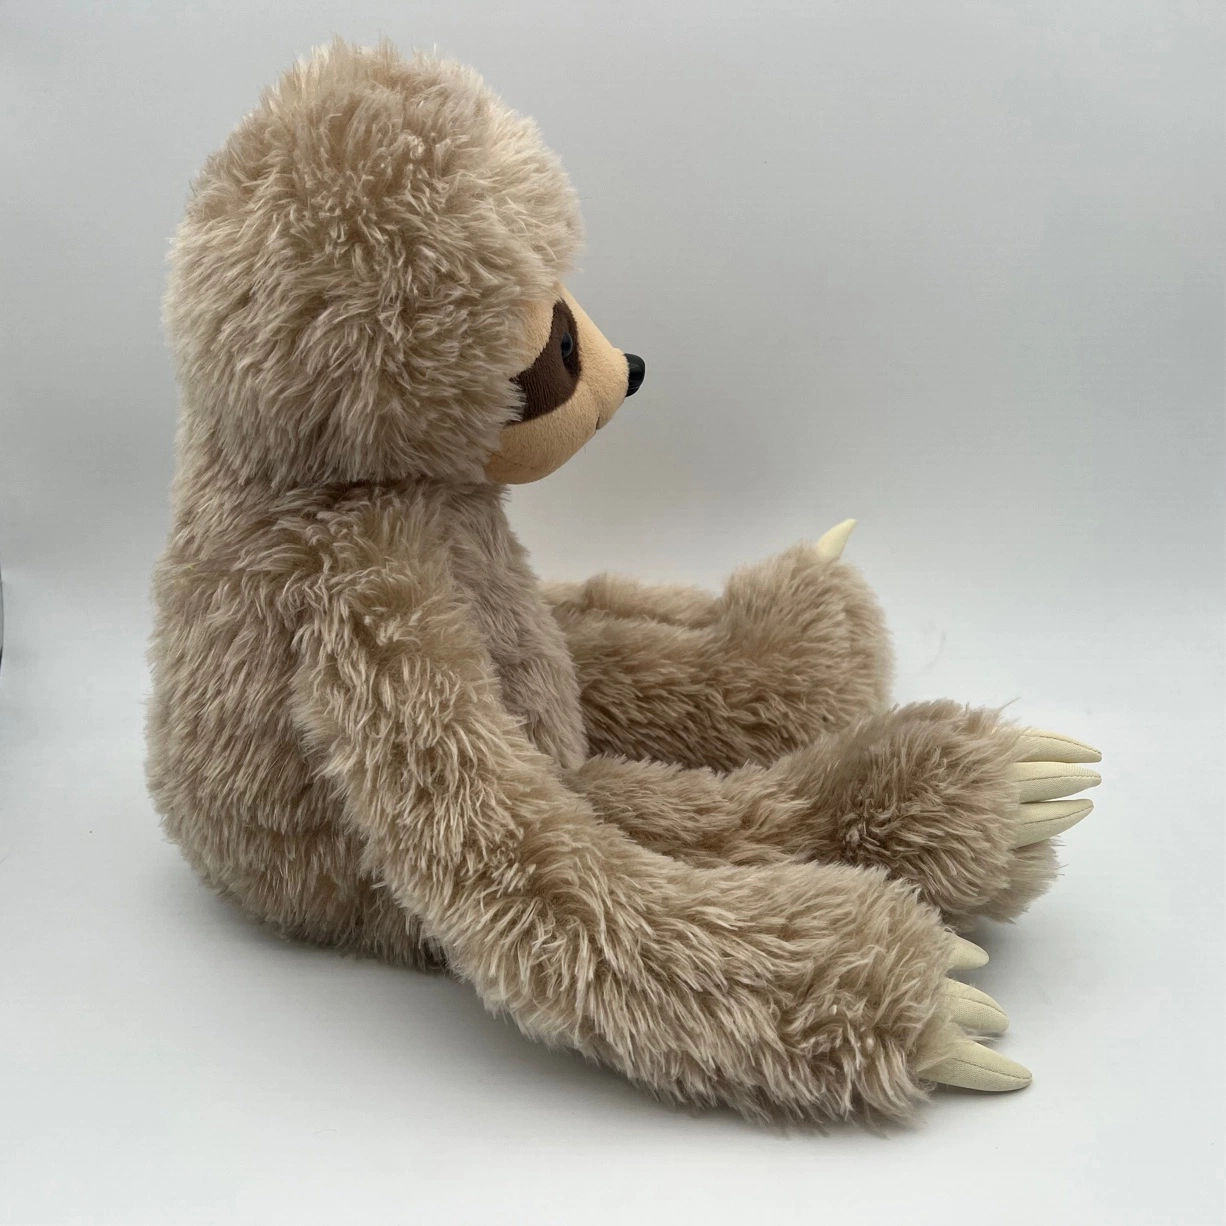 Nuevo directo de fábrica de juguetes de peluche oso perezoso de peluche de regalo para niños Baby Doll con lujosos Sloth